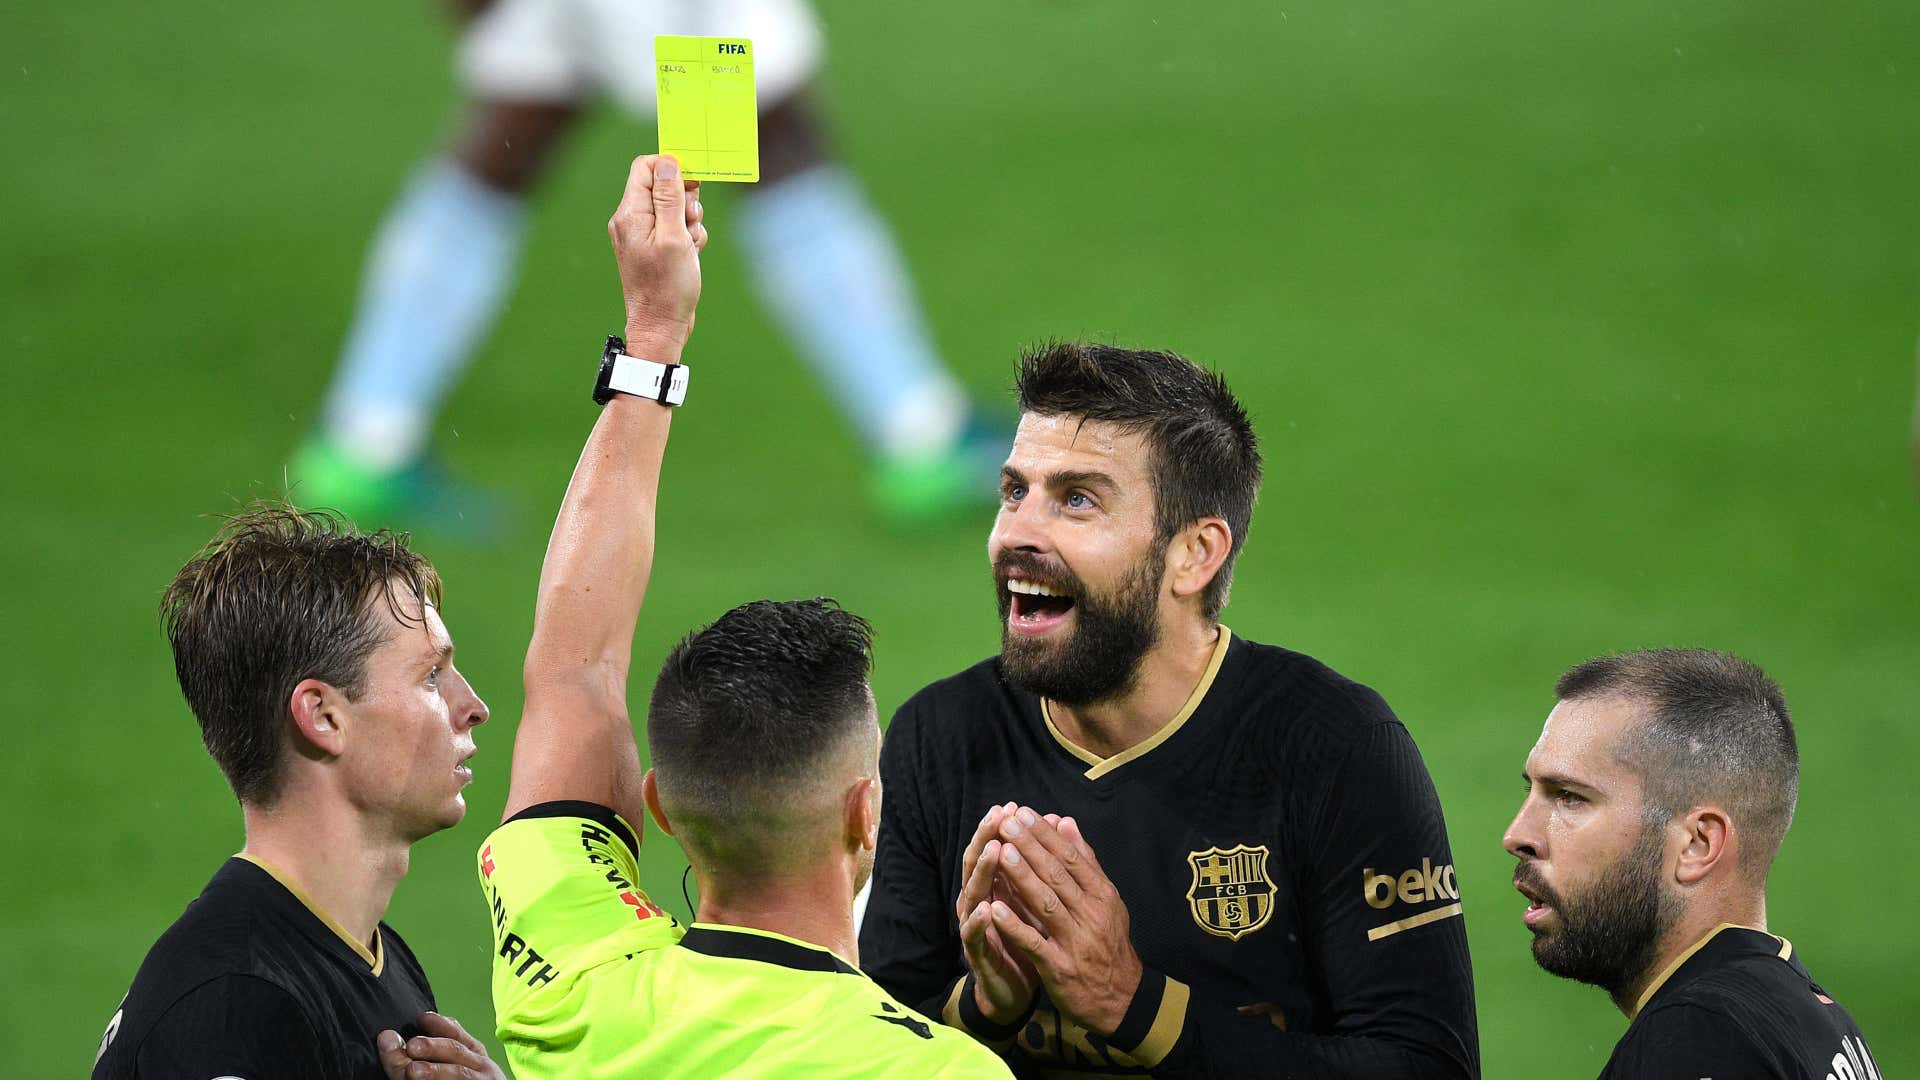 Gerard Pique Barcelona yellow card 2020-21